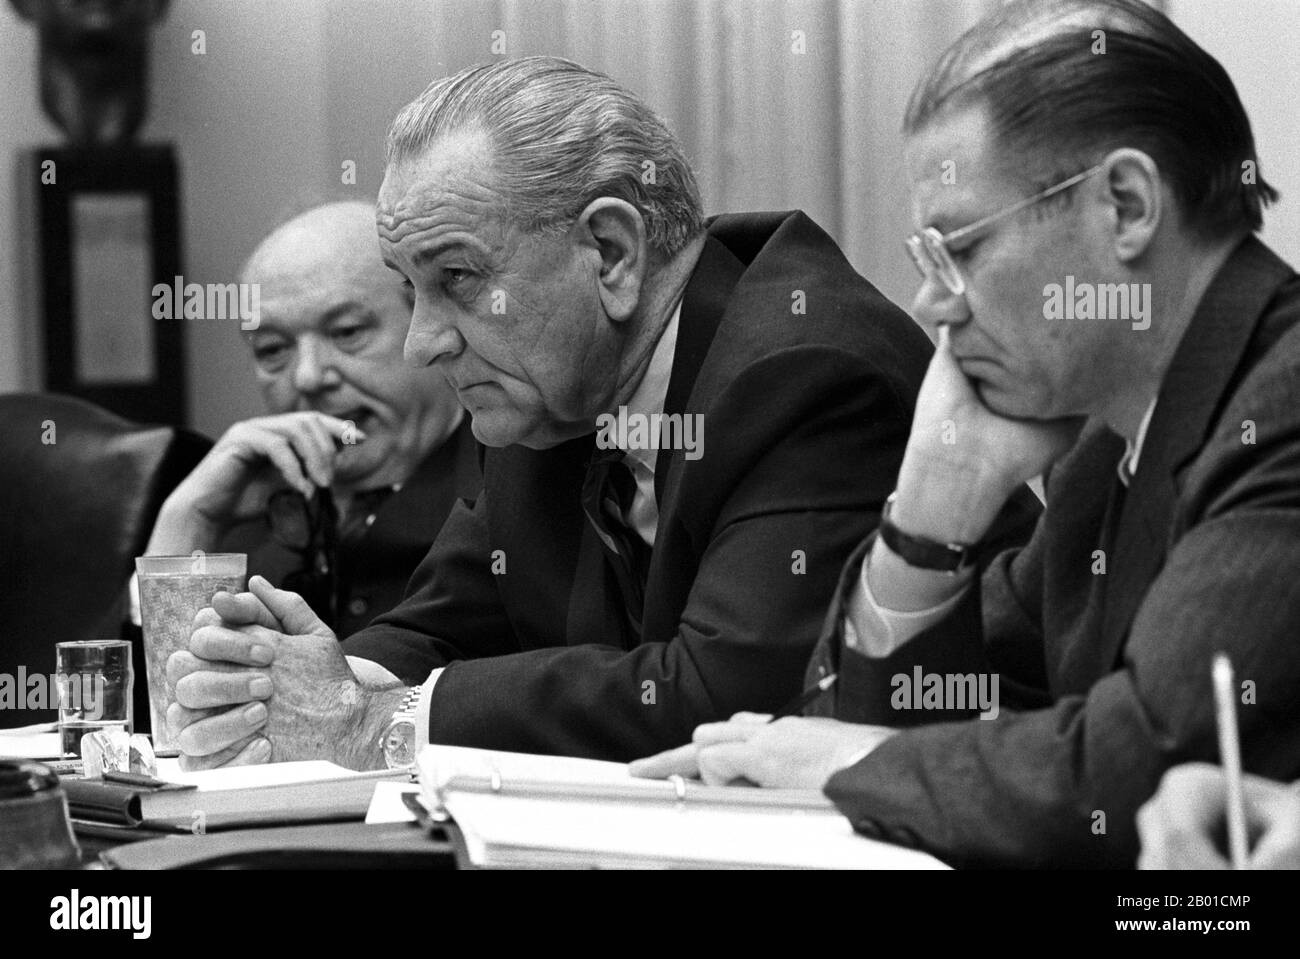 États-Unis/Vietnam : Dean Rusk, Lyndon B. Johnson et Robert McNamara dans une réunion du Cabinet de la Maison Blanche. Photo de Yoichi Okamoto (1915-1985, domaine public), 9 février 1968. De gauche à droite, Dean Rusk, secrétaire d'État des États-Unis (1961-1969), Lyndon Baines Johnson, président des États-Unis (1963-1969) et Robert McNamara, secrétaire de la Défense des États-Unis (1961-1968), se revoient au sein du cabinet de la Maison Blanche, au plus fort de l'offensive de Tet au Vietnam (30 janvier - 28 mars 1968). Banque D'Images